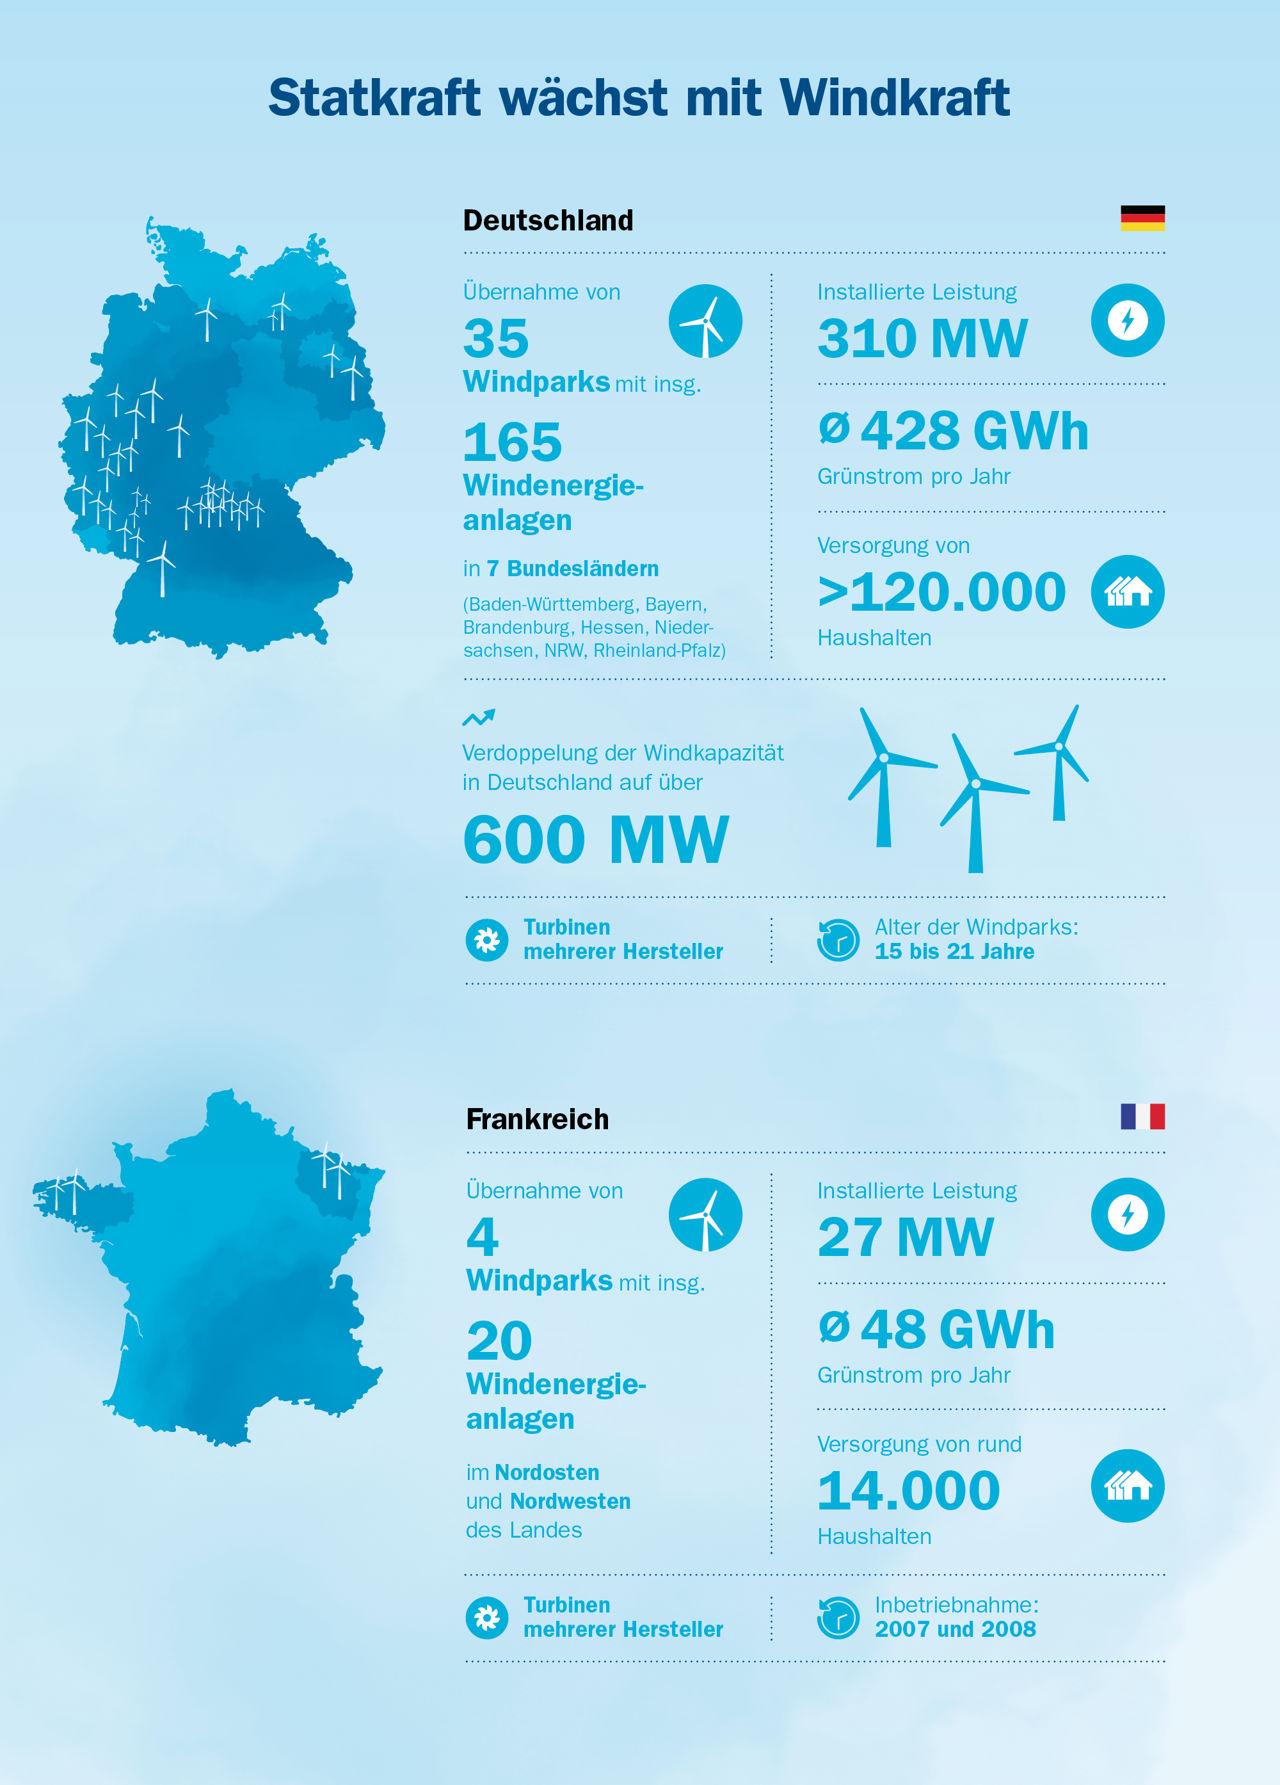 Die Grafik zeigt die Lage und die Leistung von Statkrafts neu erworbenen Windparks in Deutschland und Frankreich.  